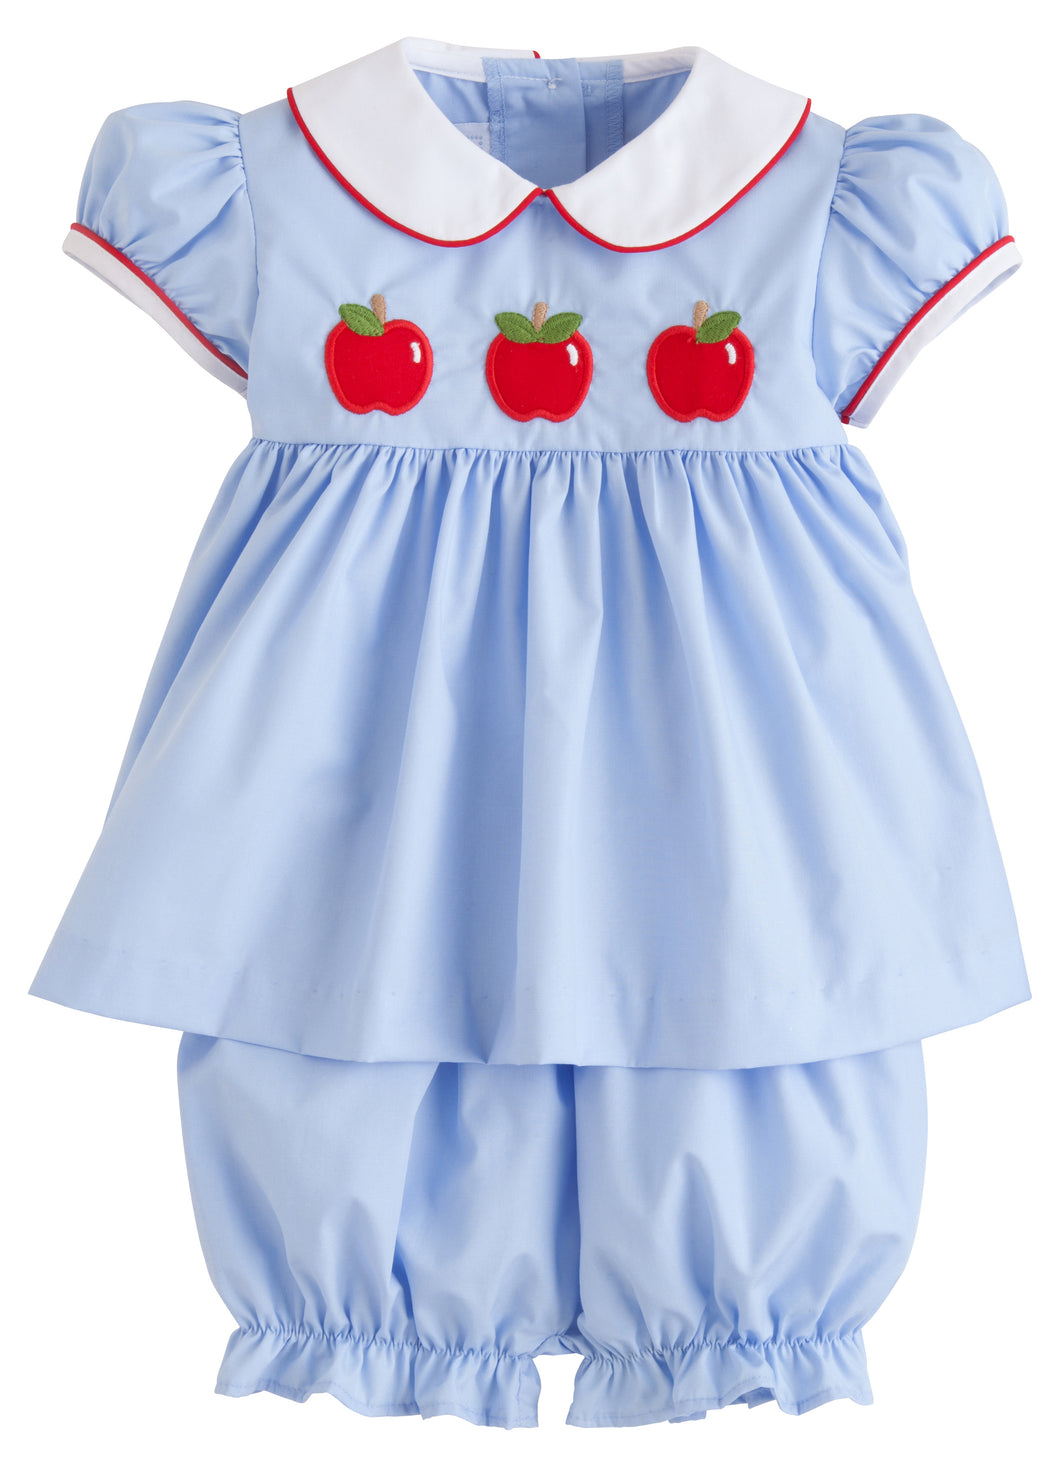 Poppy Peter Pan Apple Bloomer Set - Infant